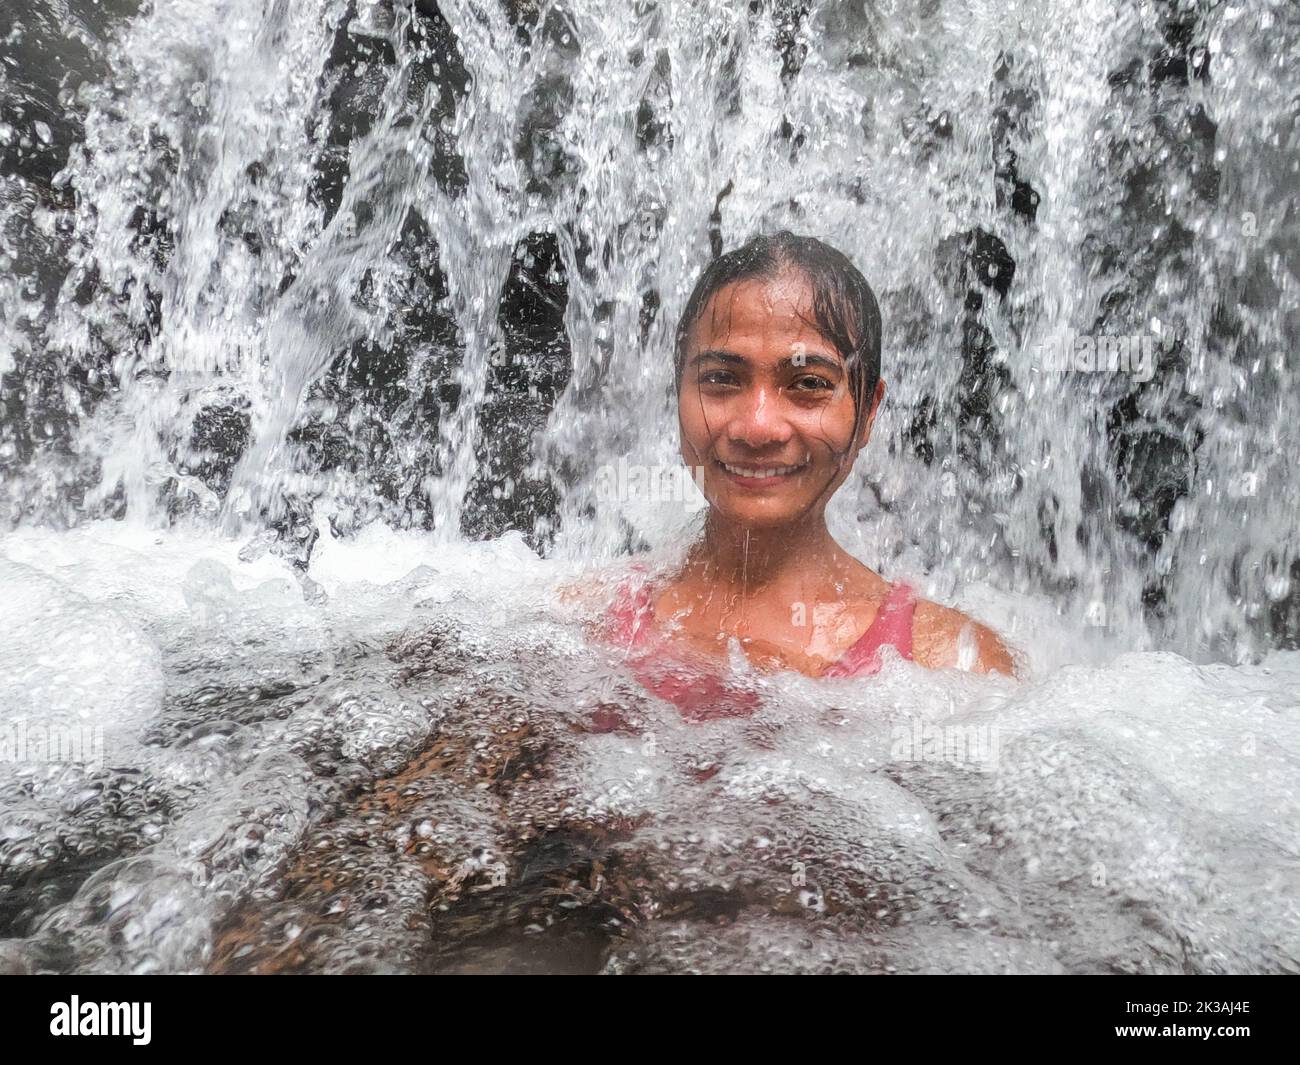 Disfrute de un río caliente en Tabacon Hot Springs, La Fortuna, Costa Rica Foto de stock